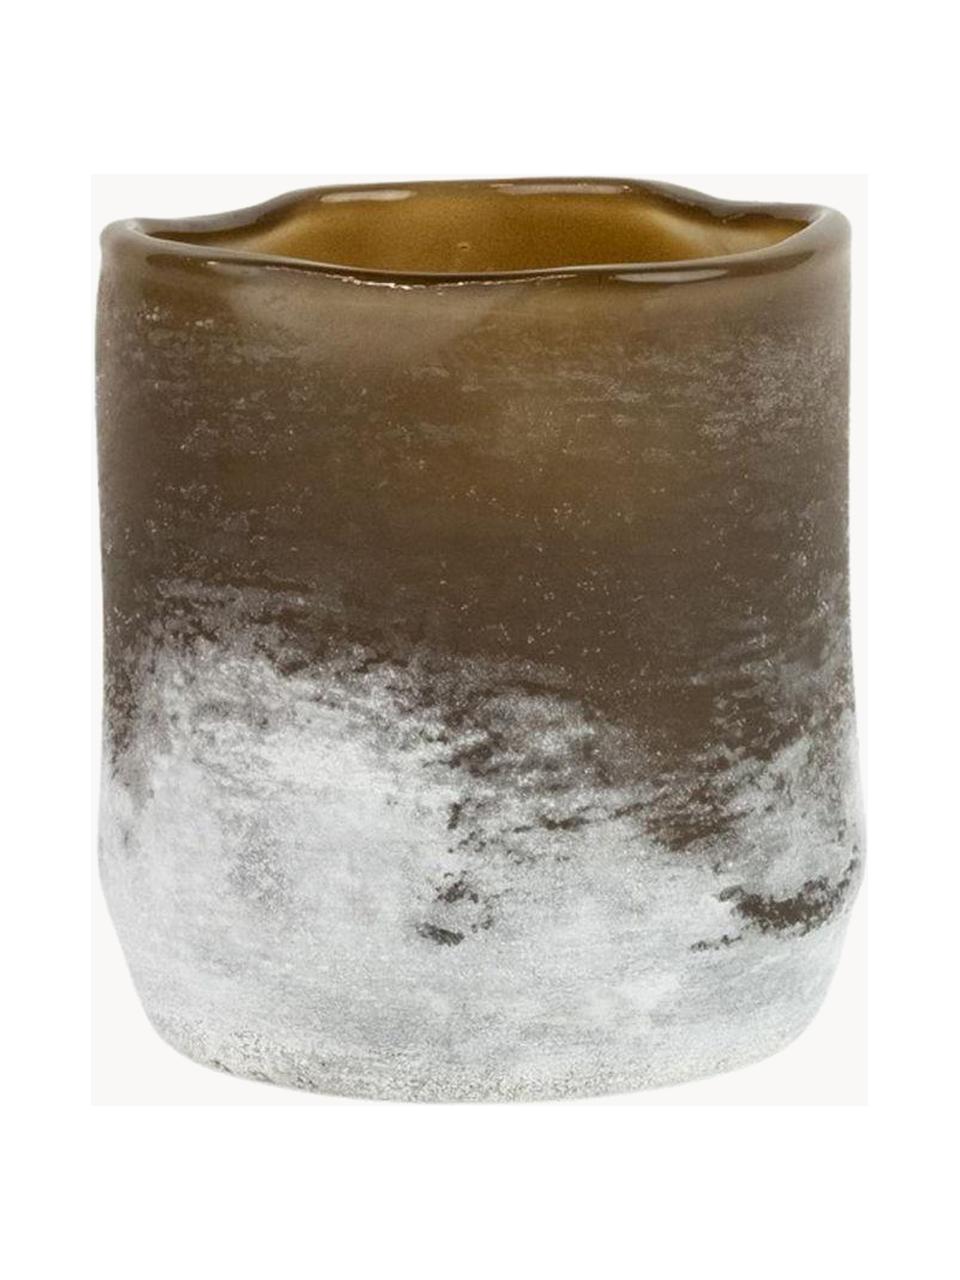 Teelichthalter Halde mit matter Oberfläche, Glas, Braun, Weiß, Ø 11 x H 12 cm